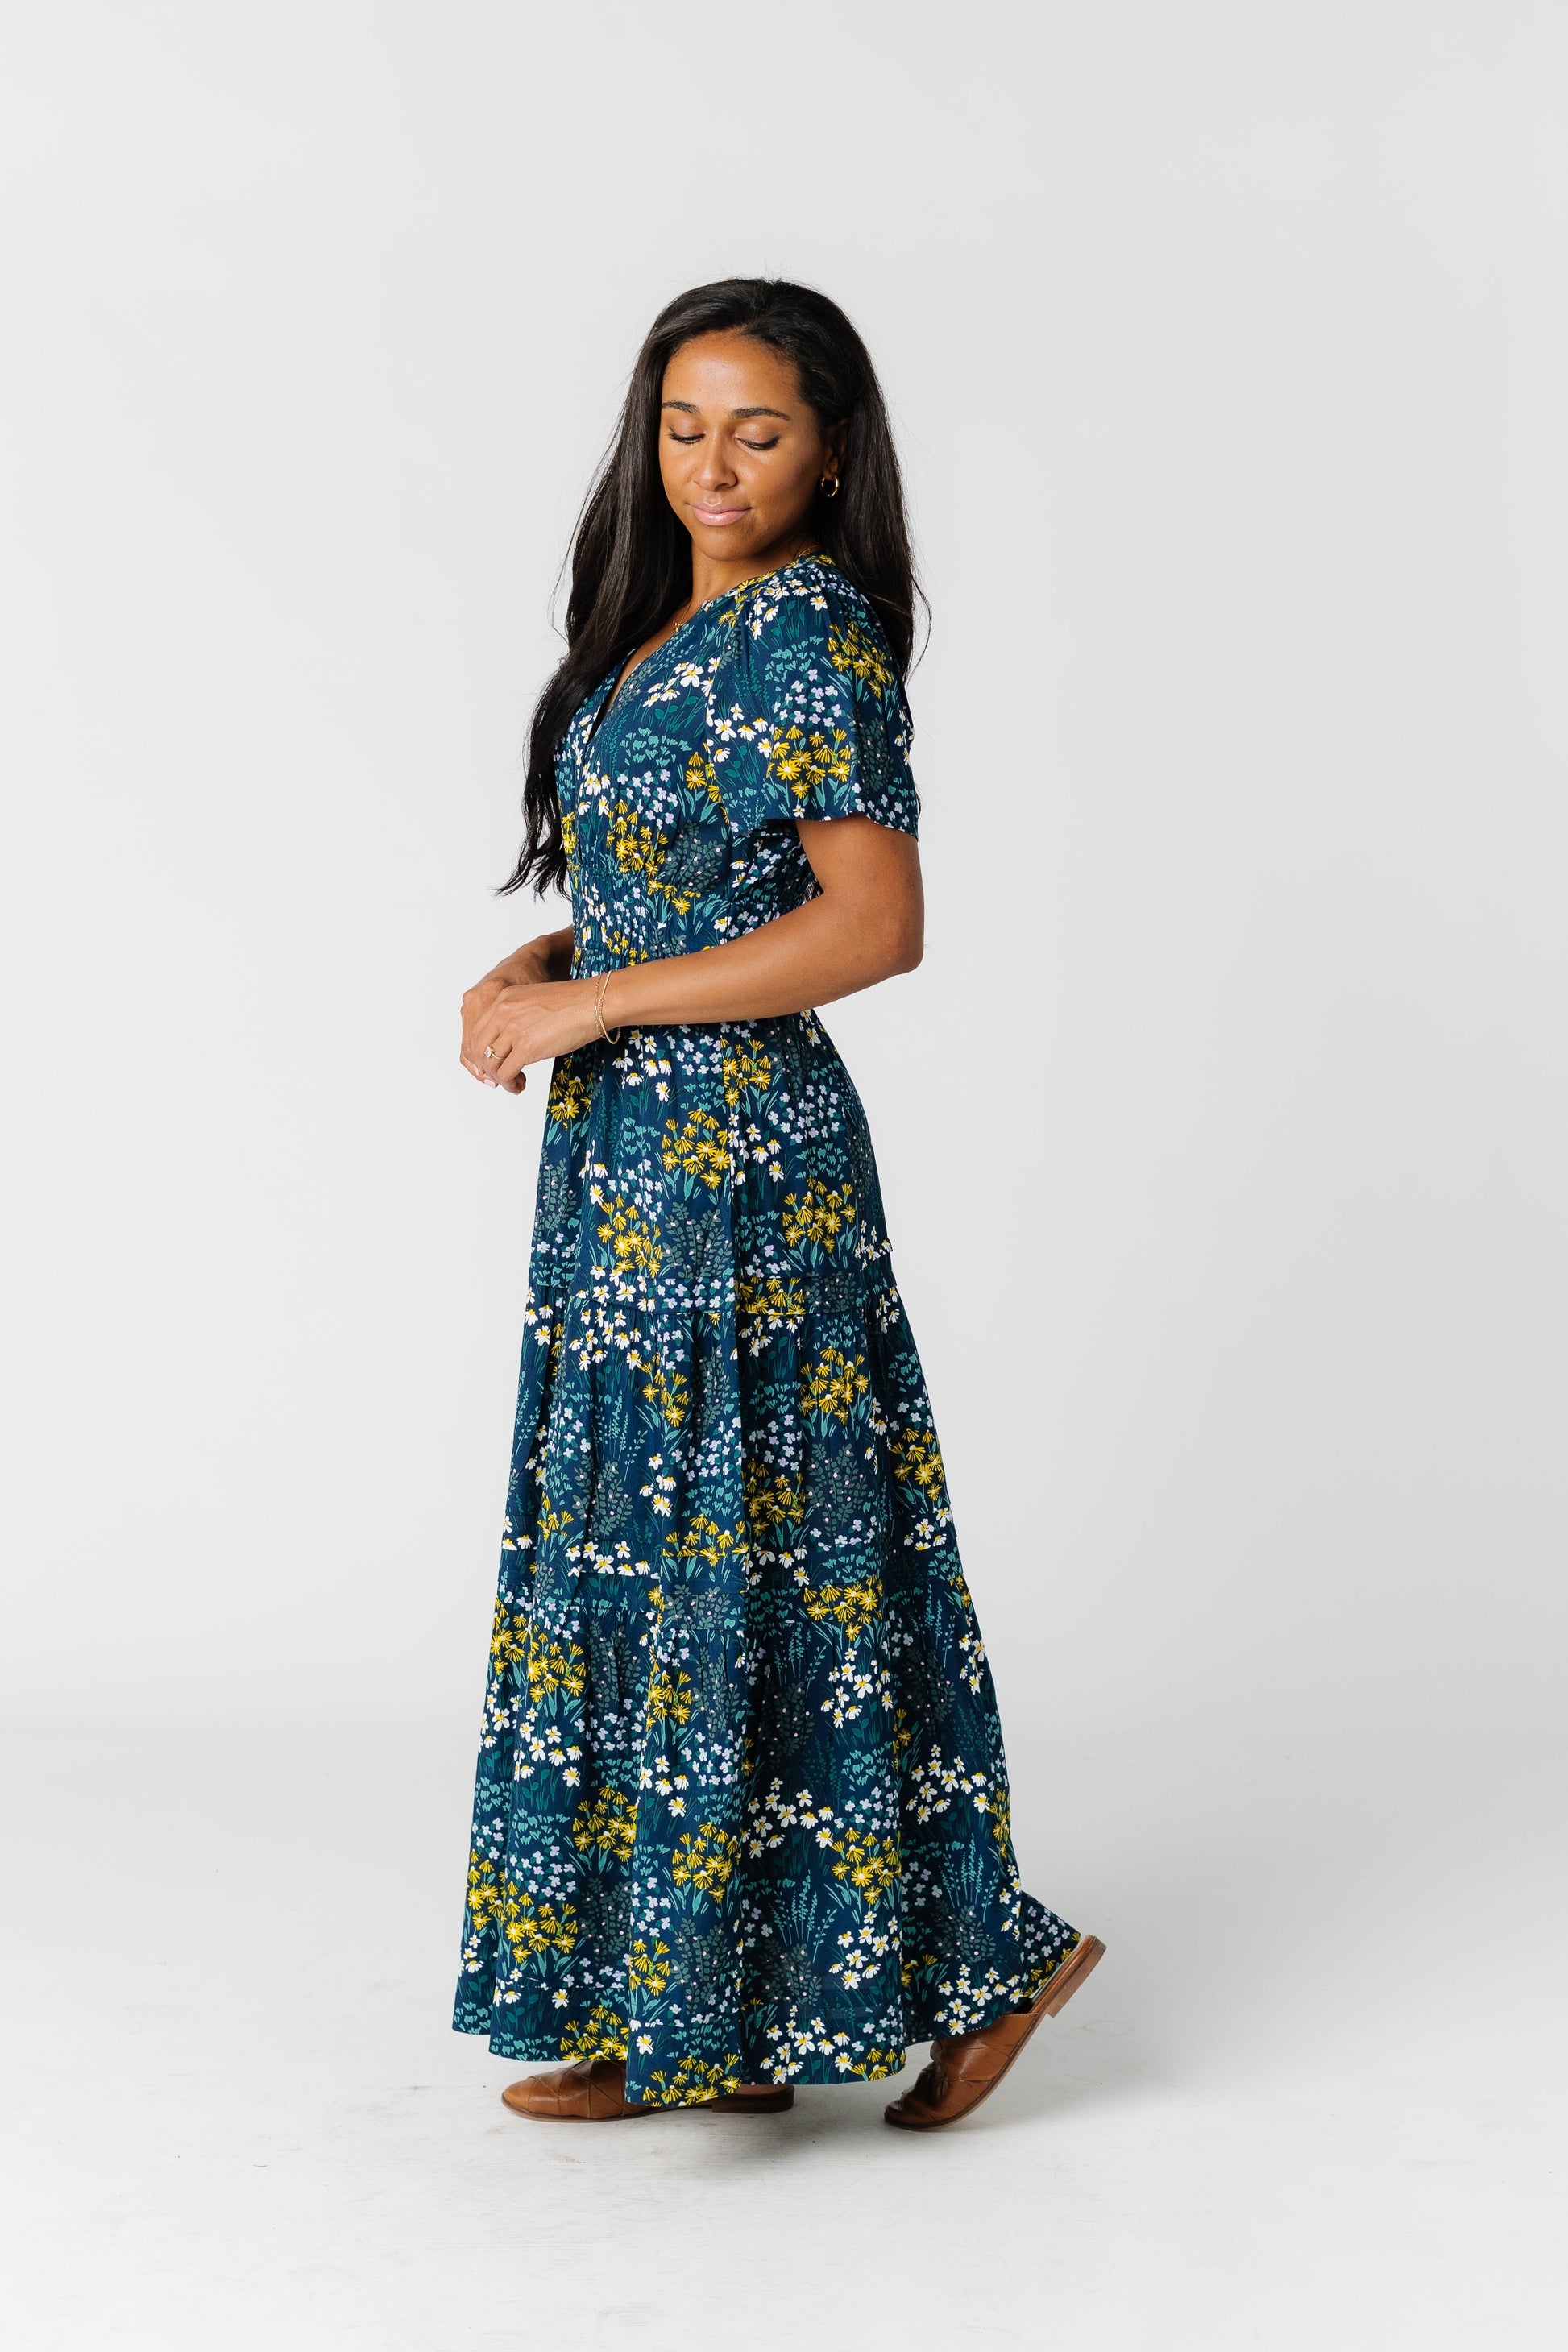 Citrus Shae Garden Print Dress WOMEN'S DRESS Citrus 